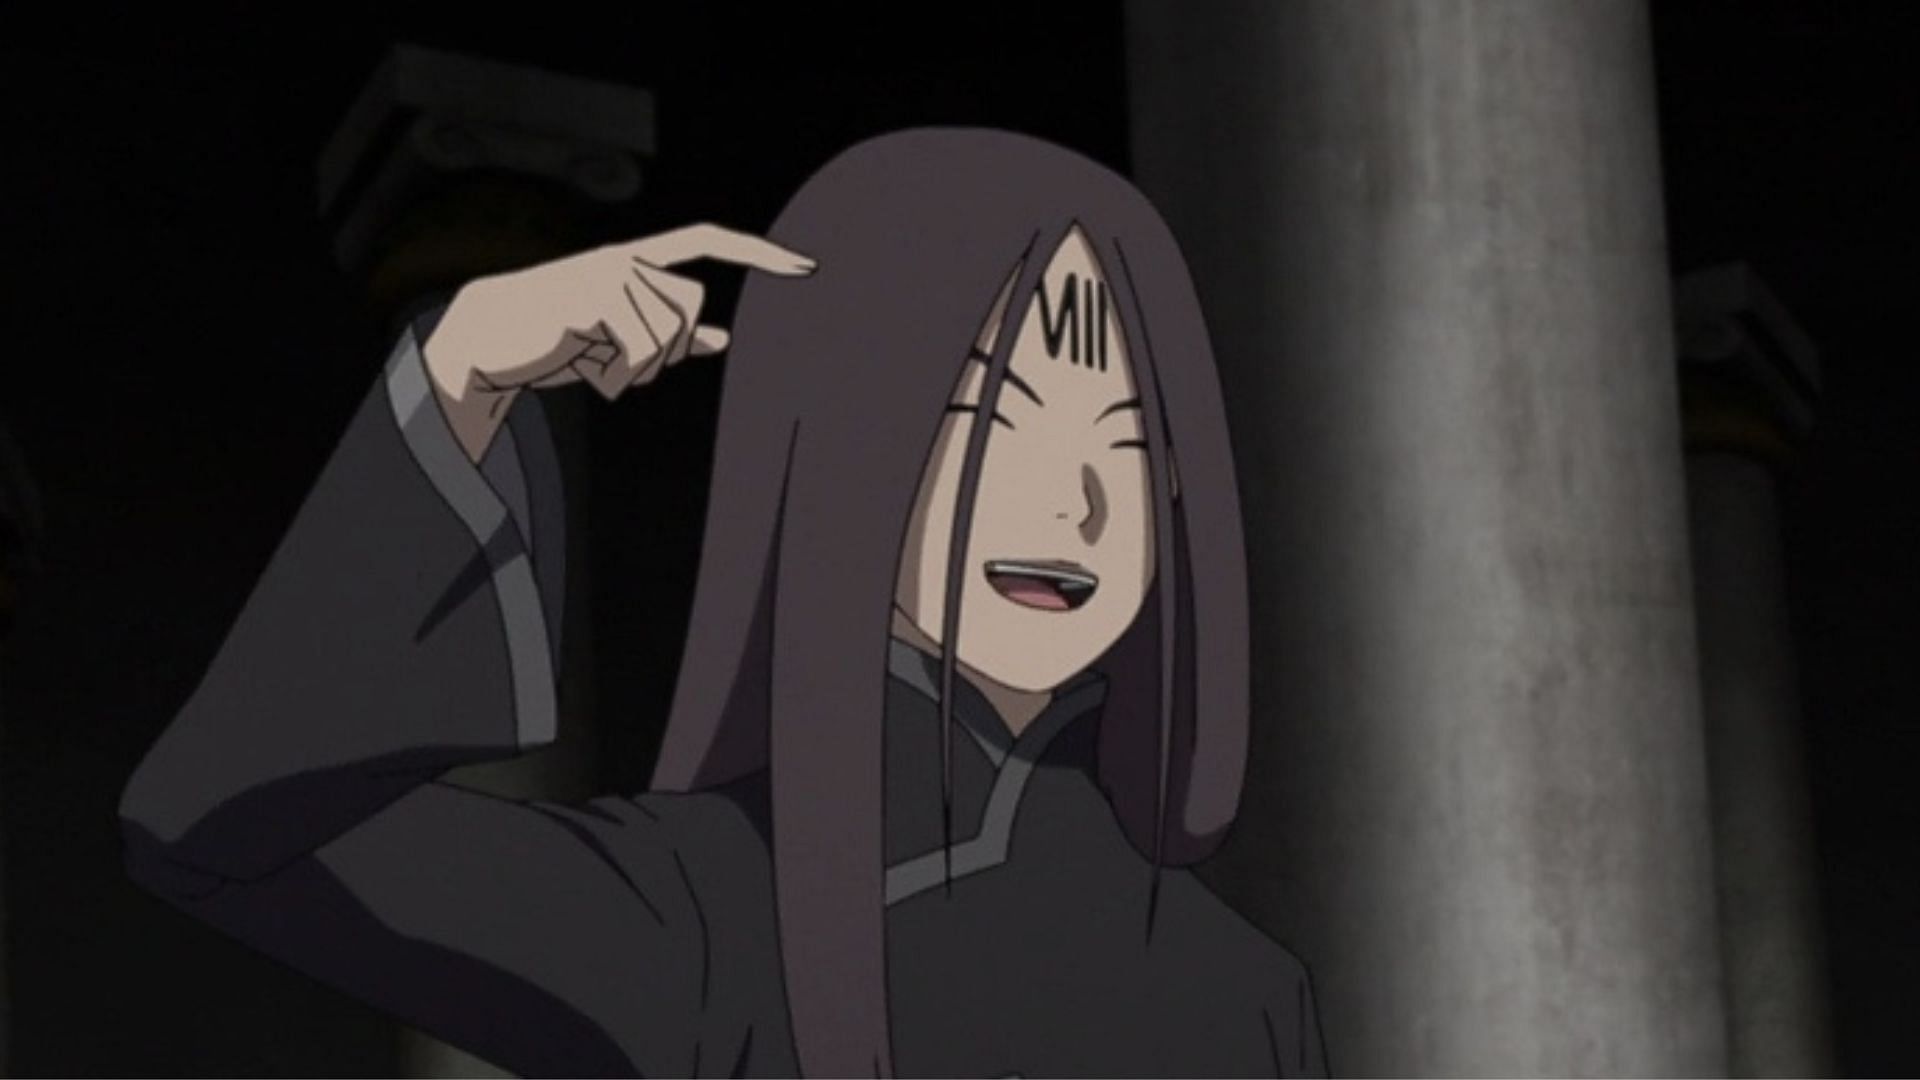 Boruto: Naruto Next Generations Episode 281: Defeating Ouga is inevitable  to awaken everyone